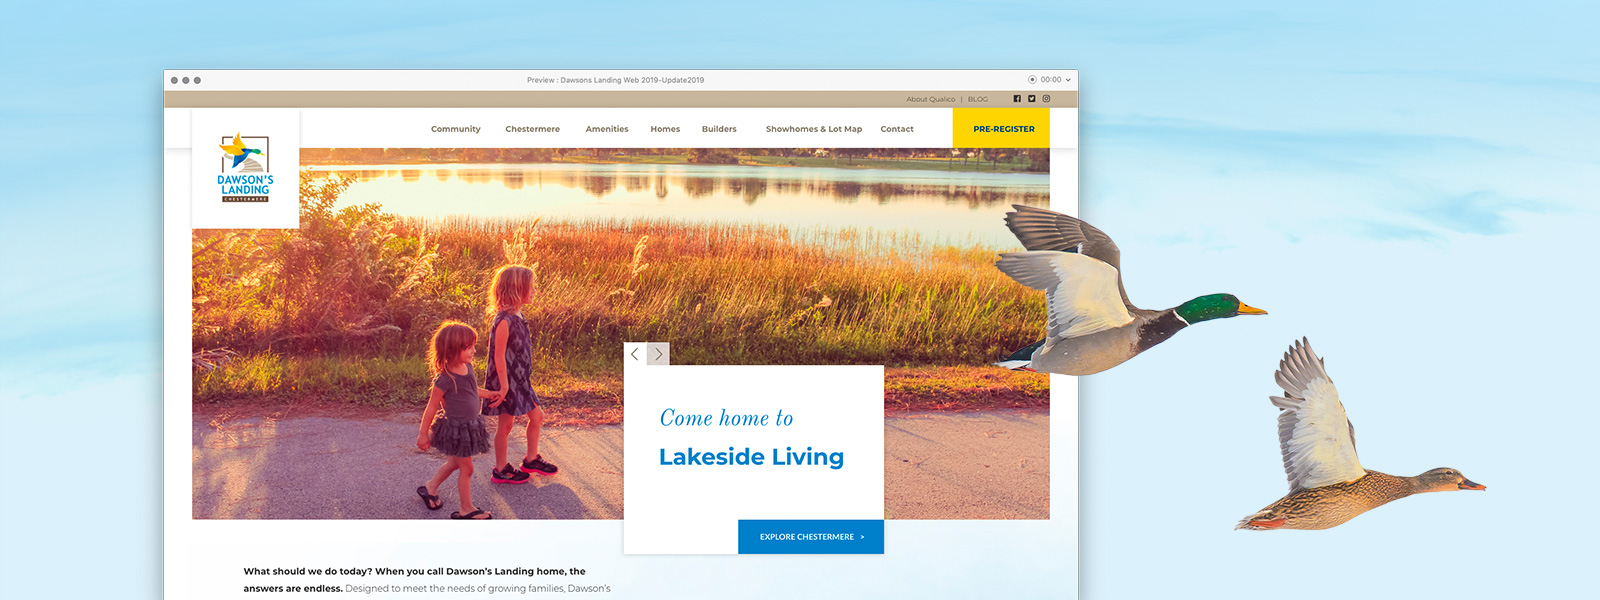 Dawson's Landing website homepage design